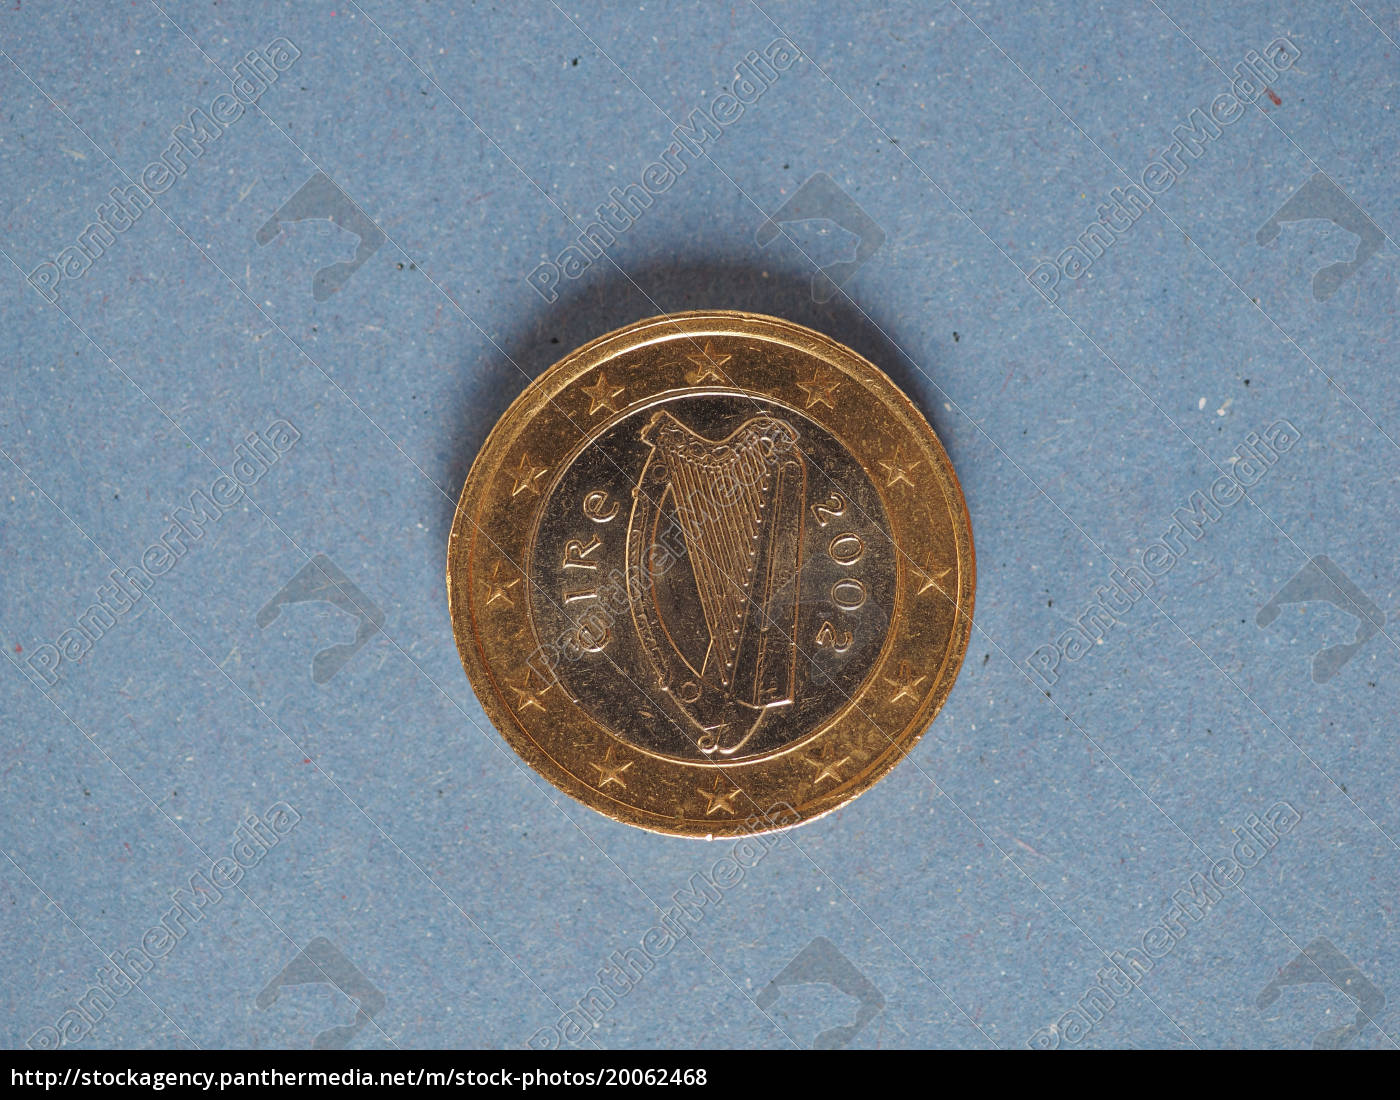 1 € münze europäische union irland über blau - Lizenzfreies Foto #20062468